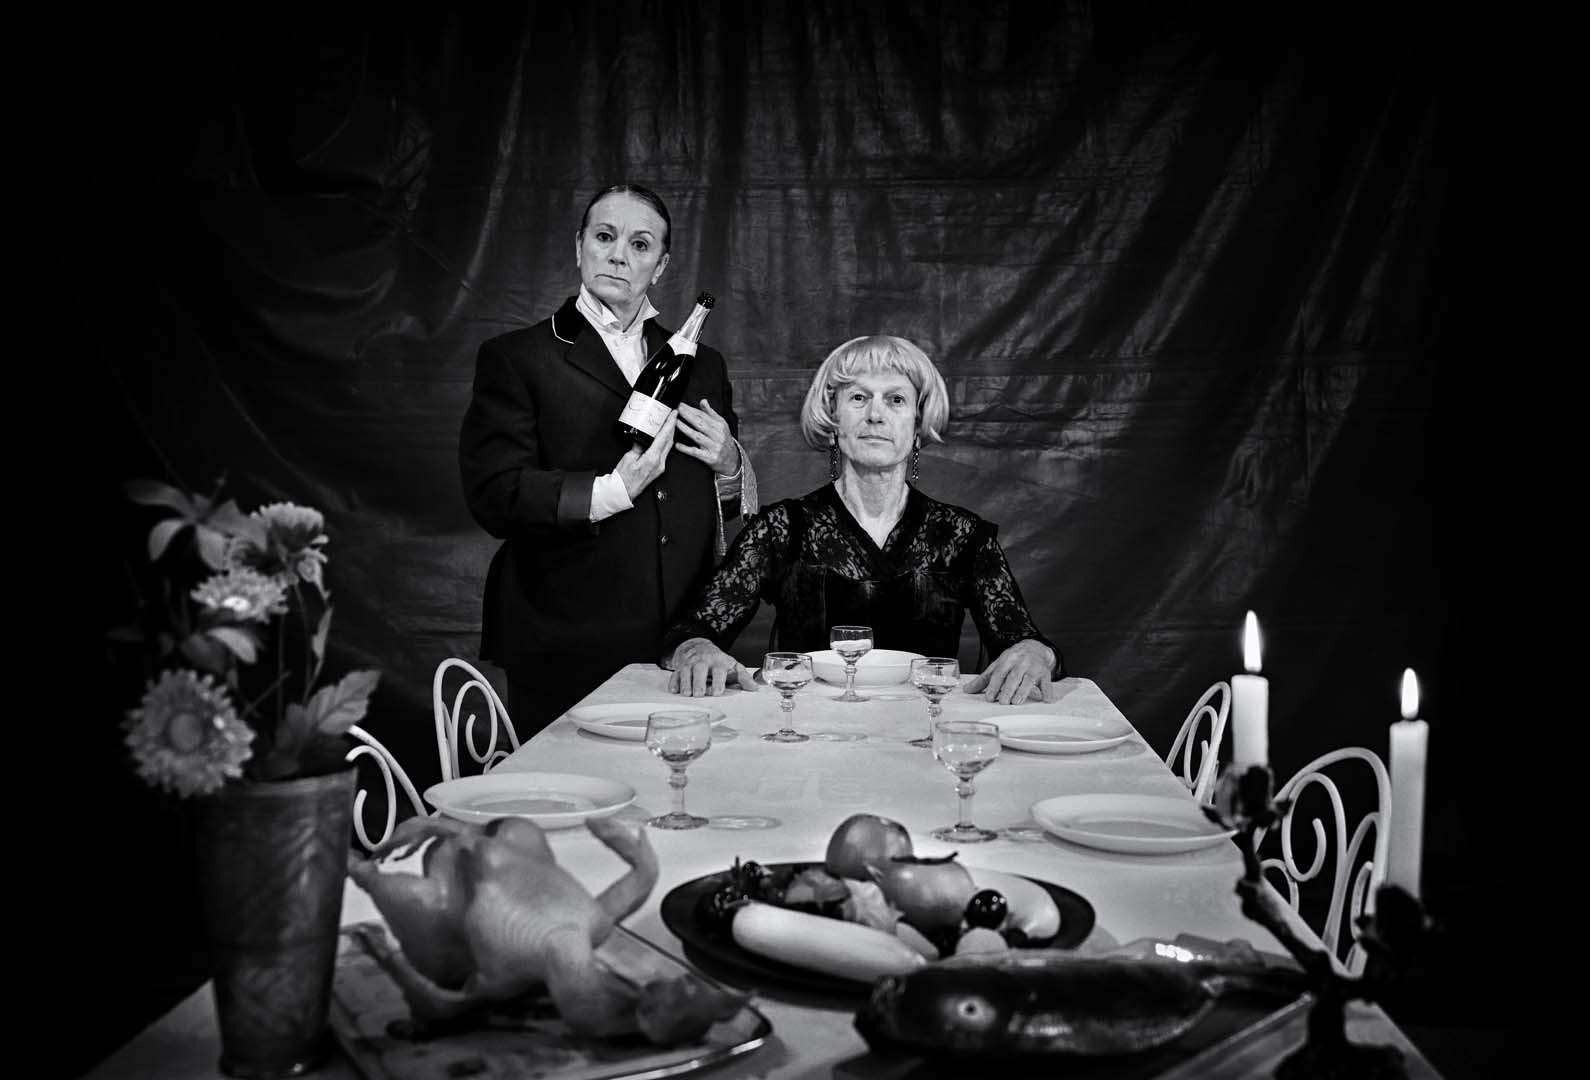 Les deux artistes posent derrière la table du dîner